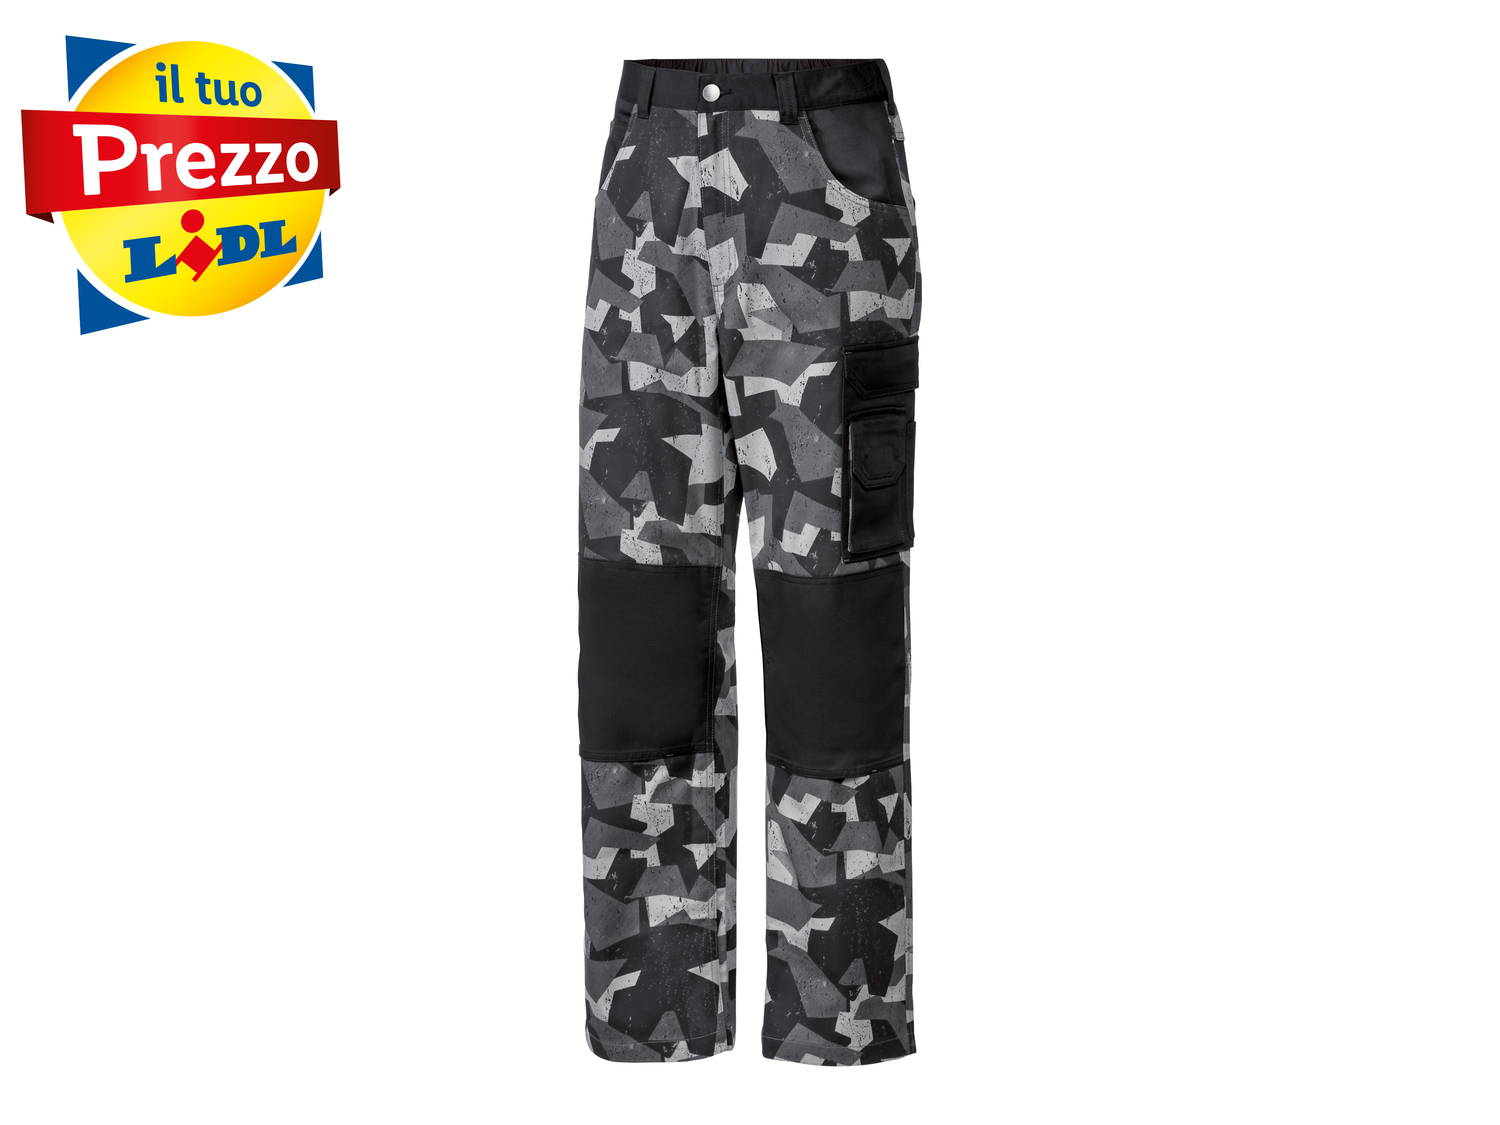 Pantaloni da lavoro Parkside, prezzo 9.99 &#8364; 
Misure: 46-56
Taglie disponibili

Caratteristiche

- ...